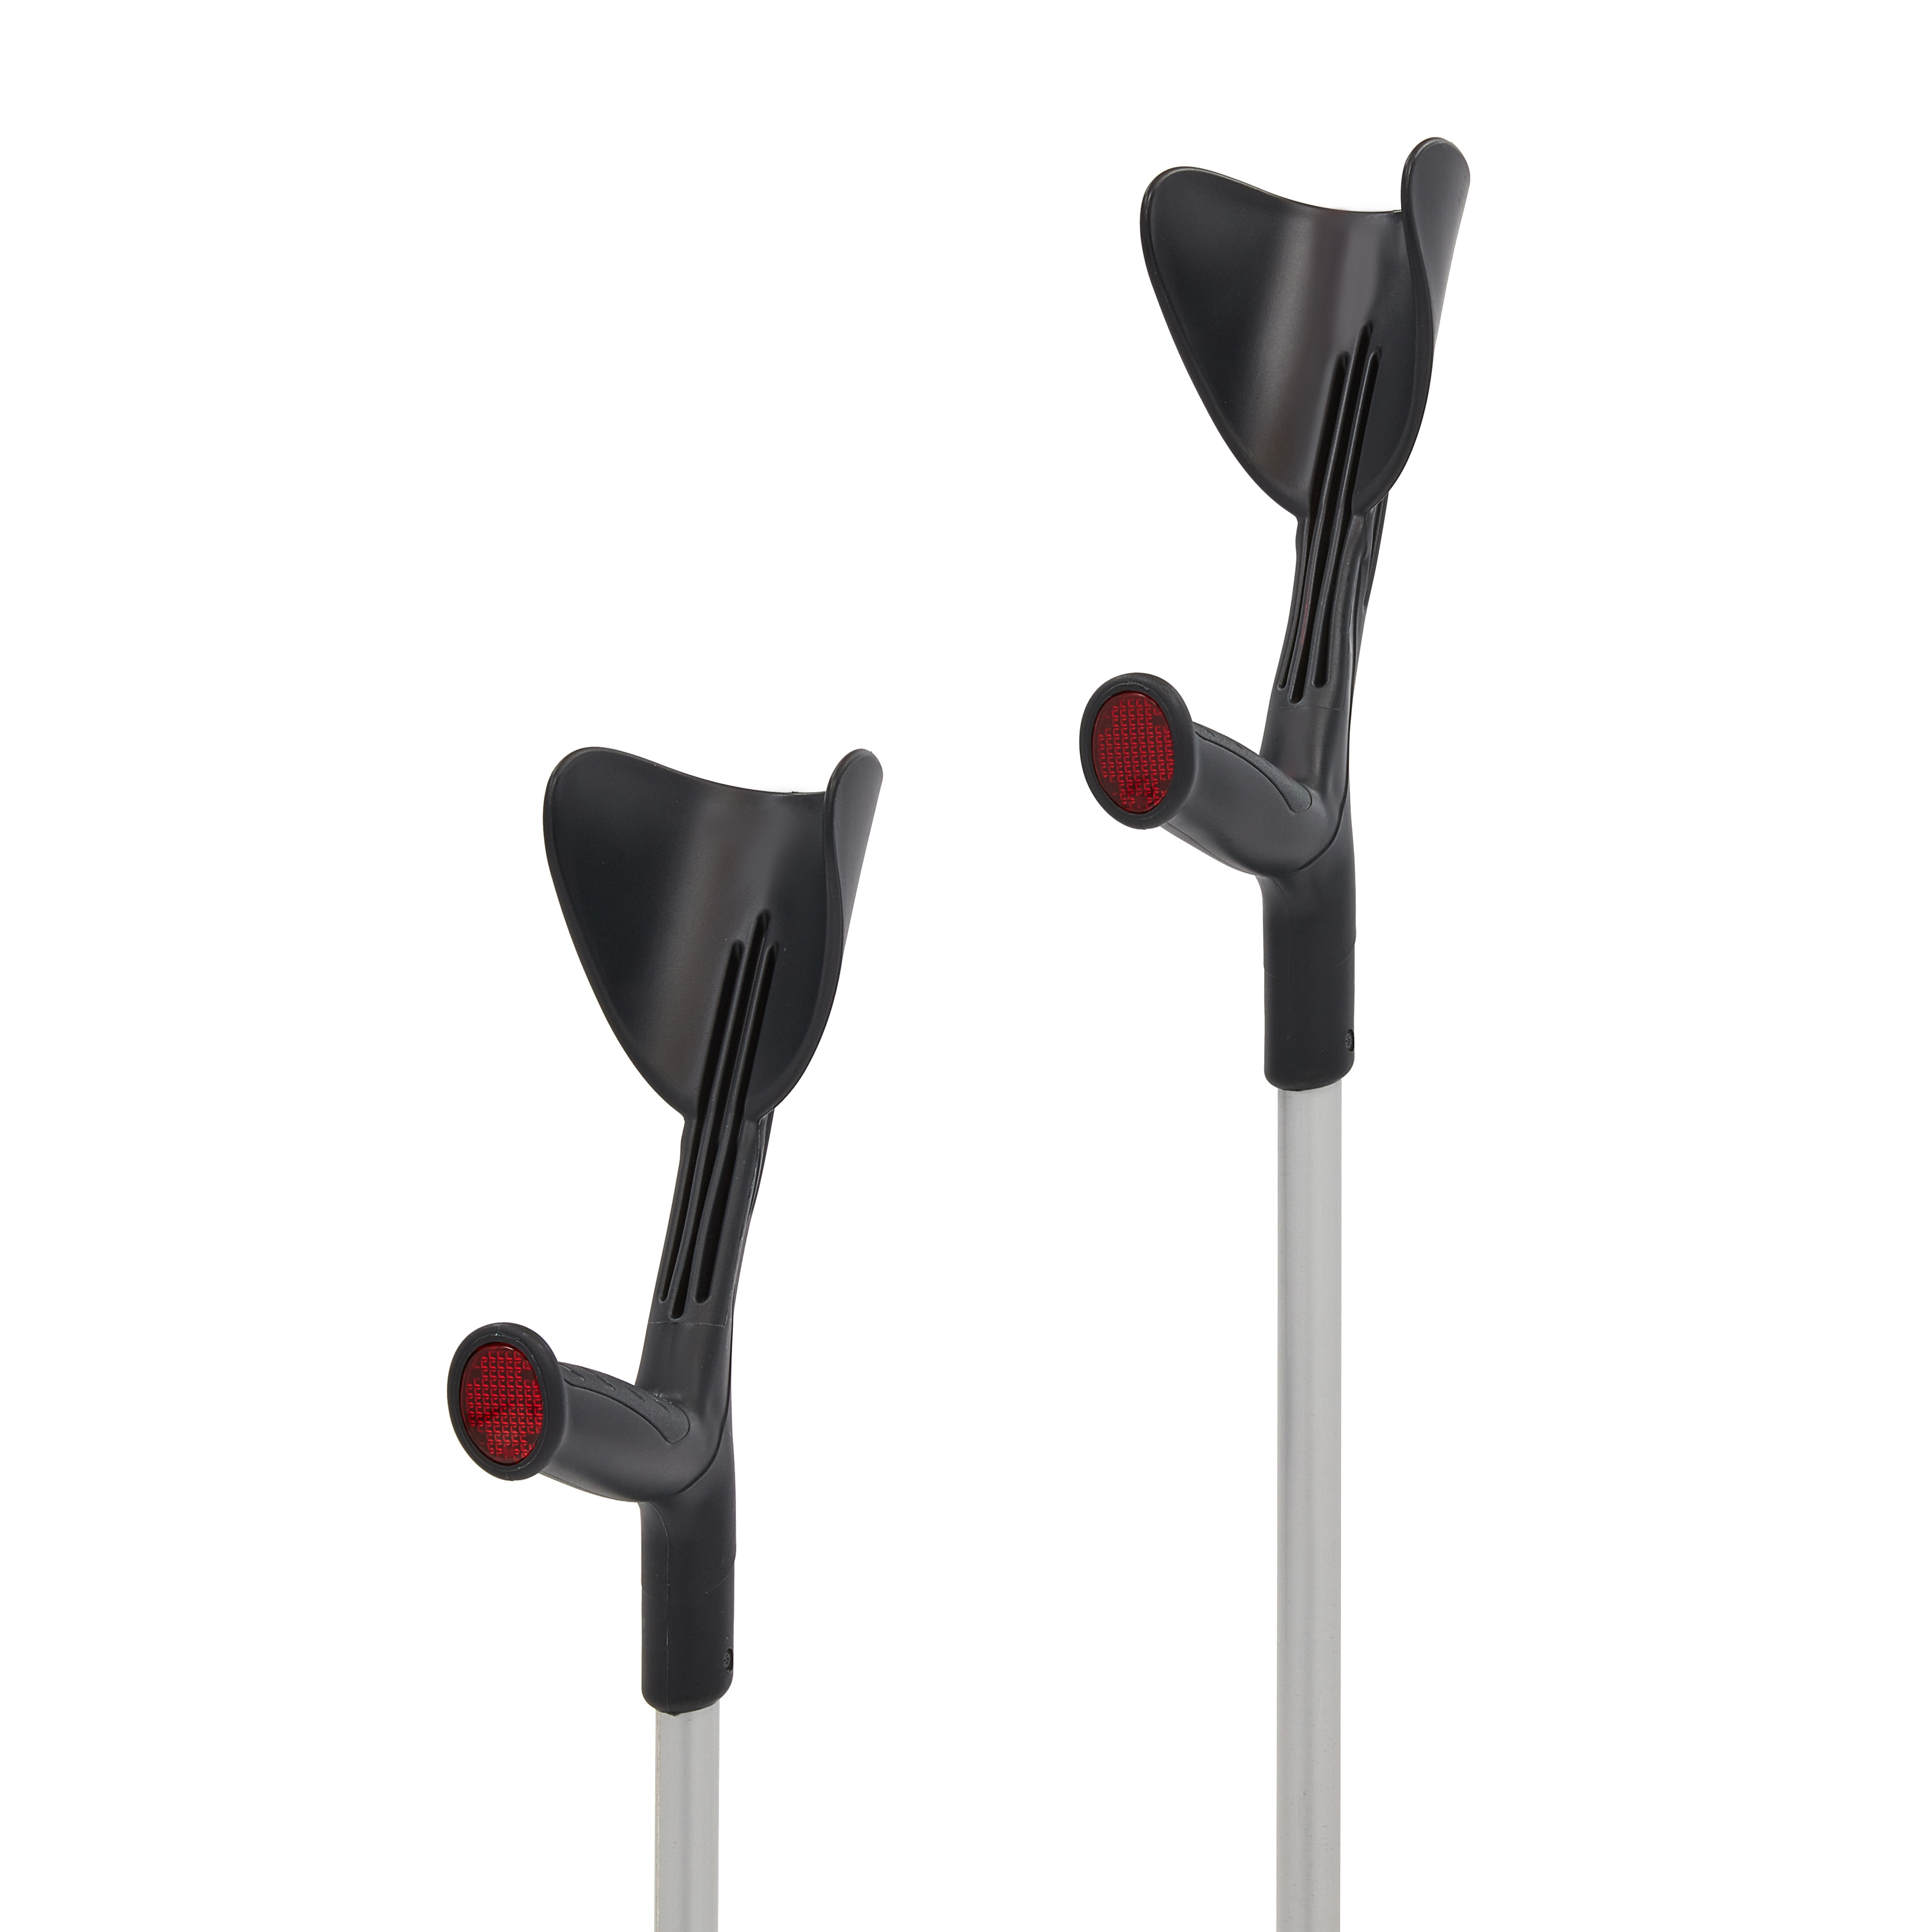 CRU01 Romed aluminium crutches, black/silver, open cuff, 80 pcs in a carton.